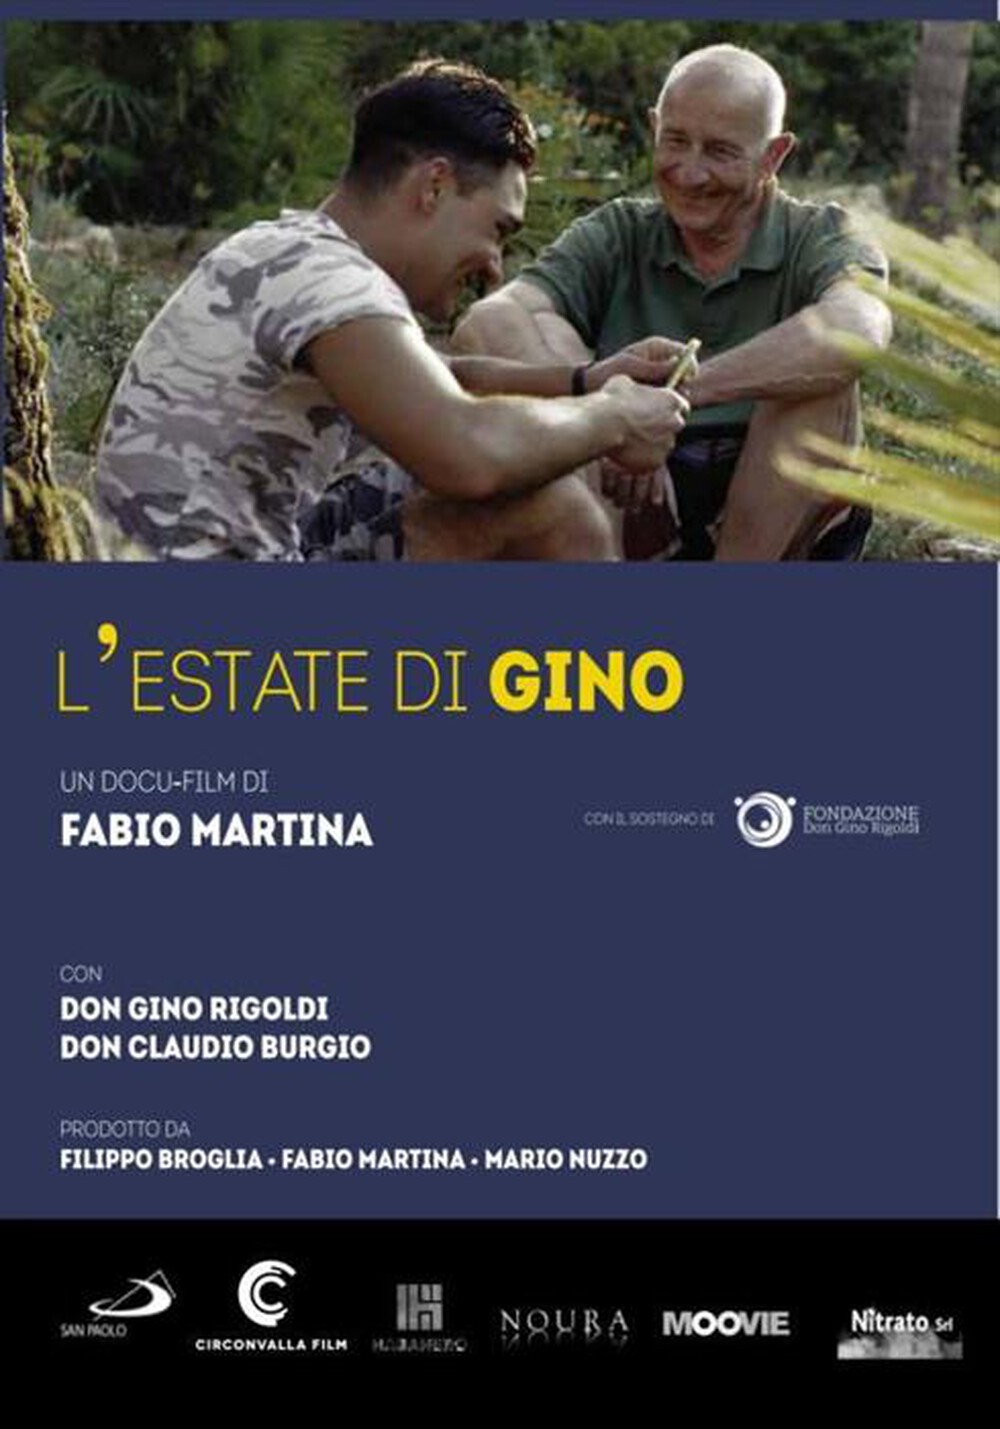 "SAN PAOLO - Estate Di Gino (L')"